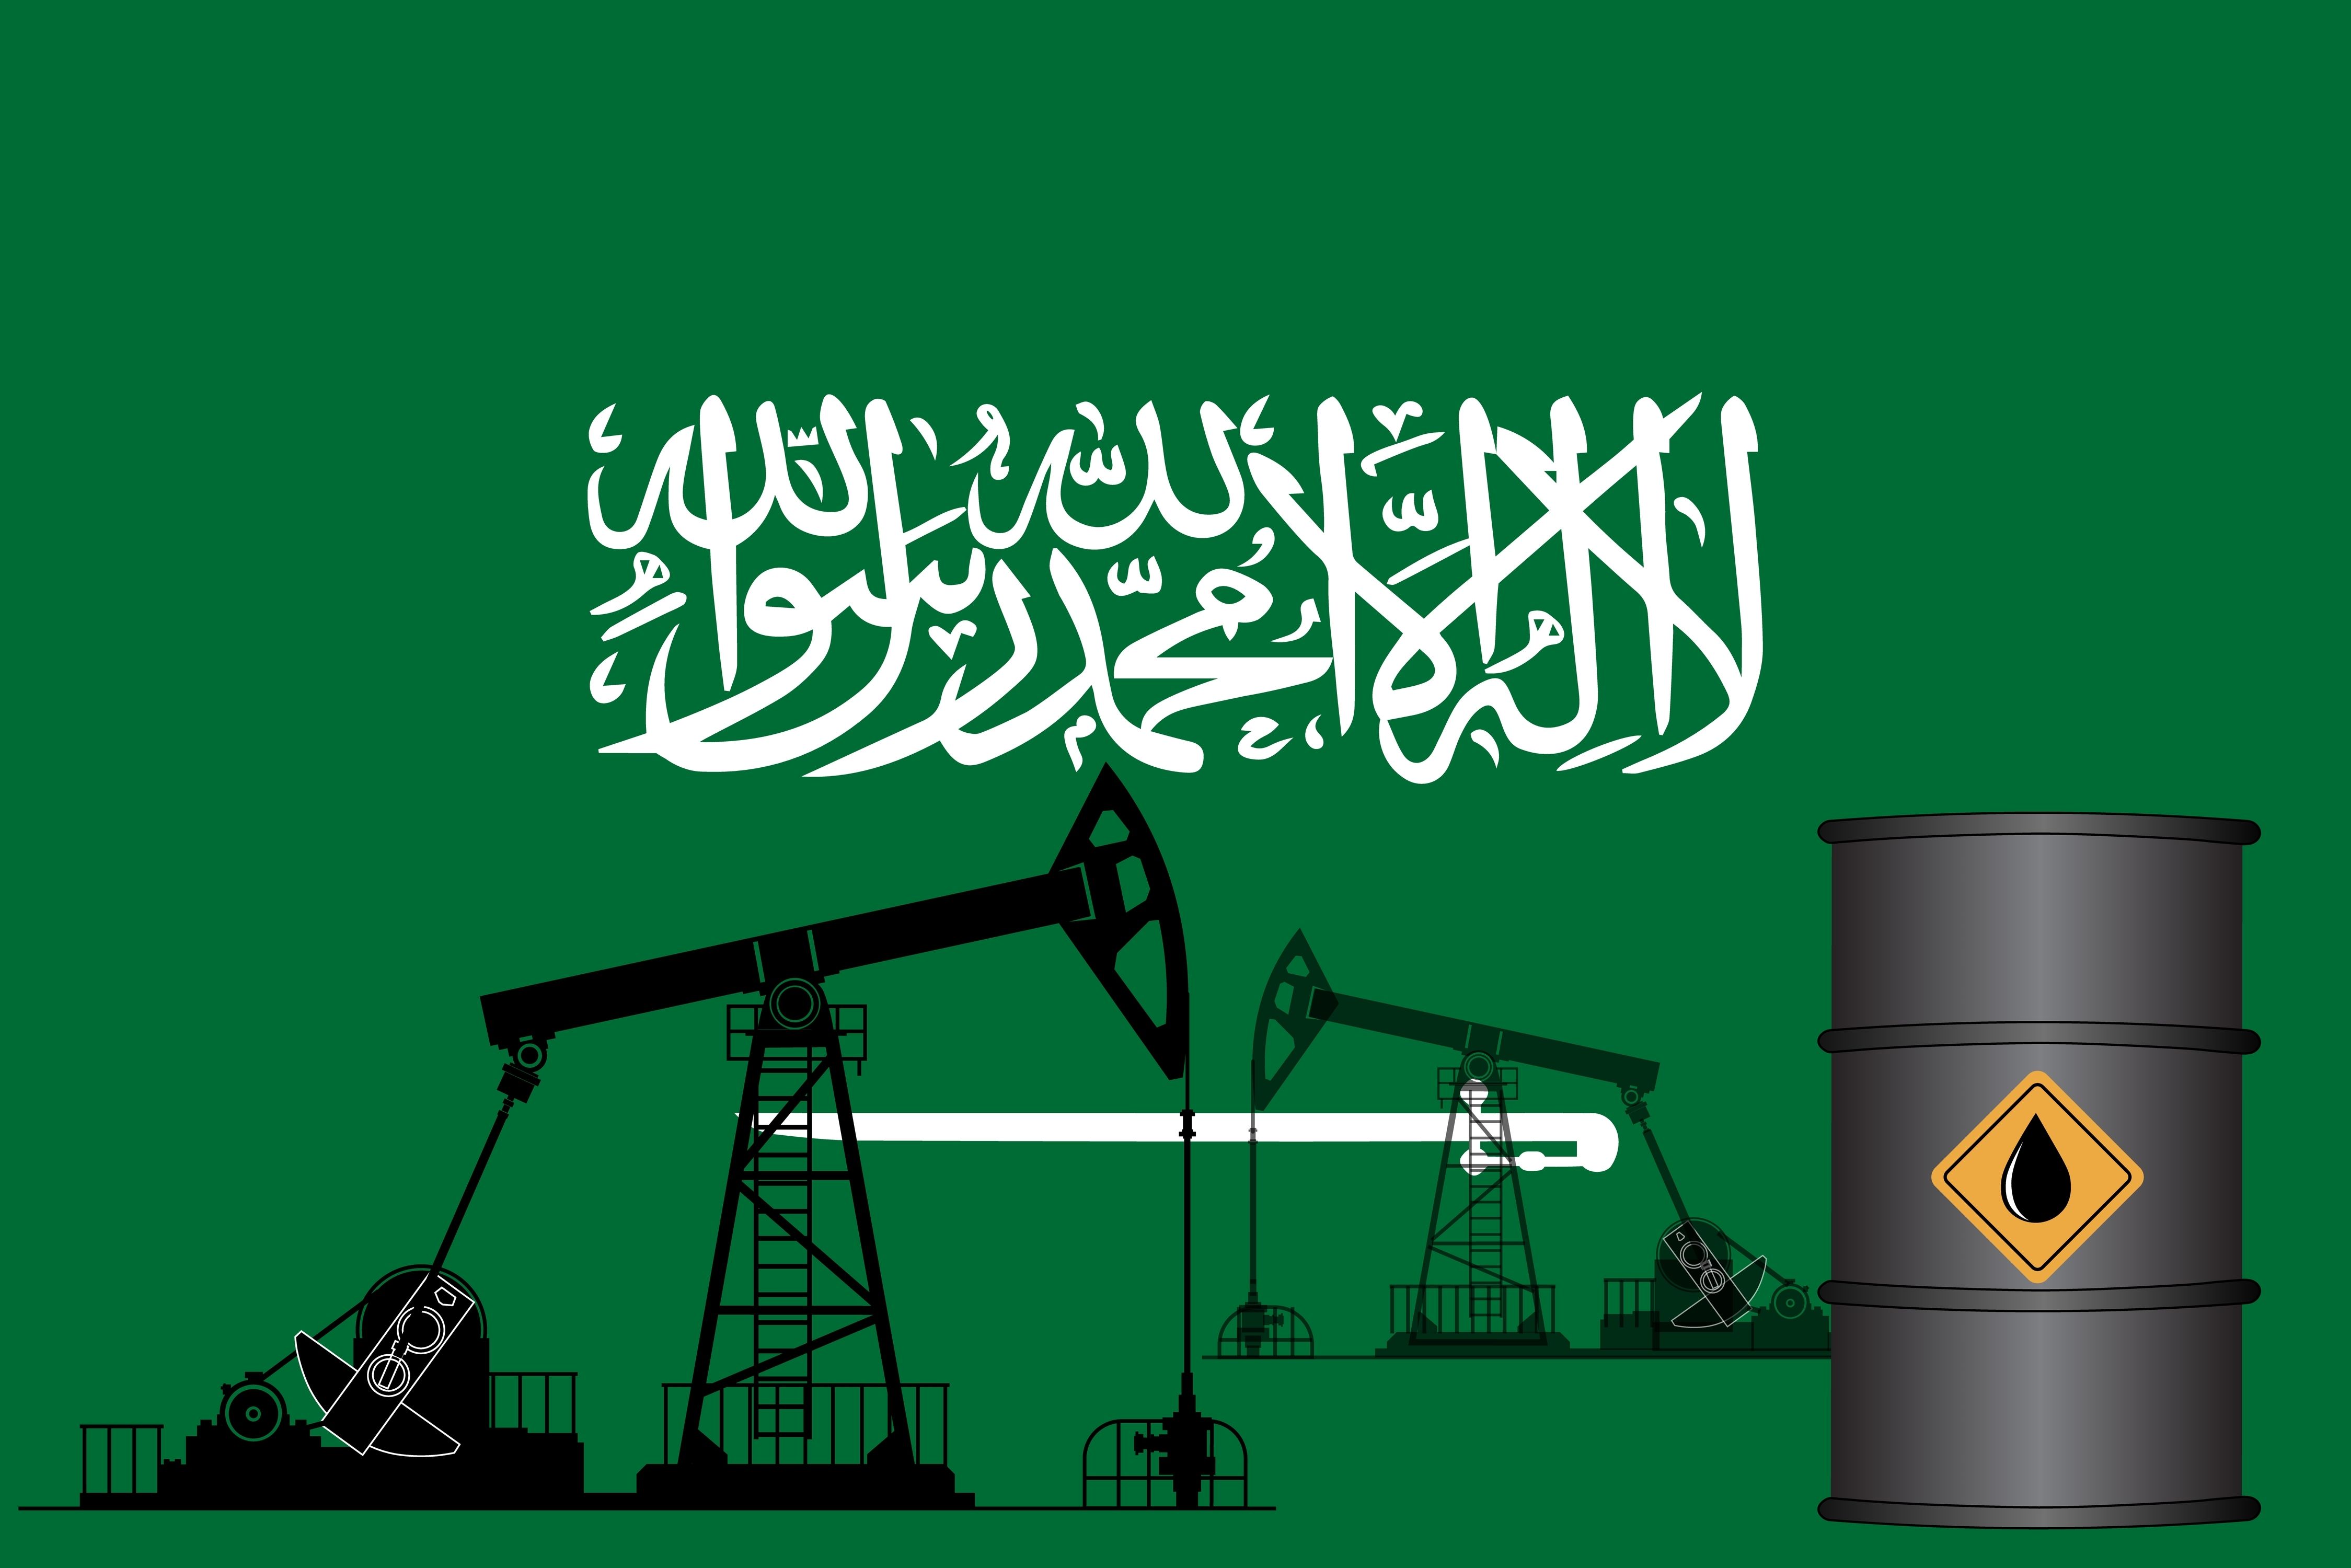 Саудовская Аравия может снизить цены на нефть для Азии